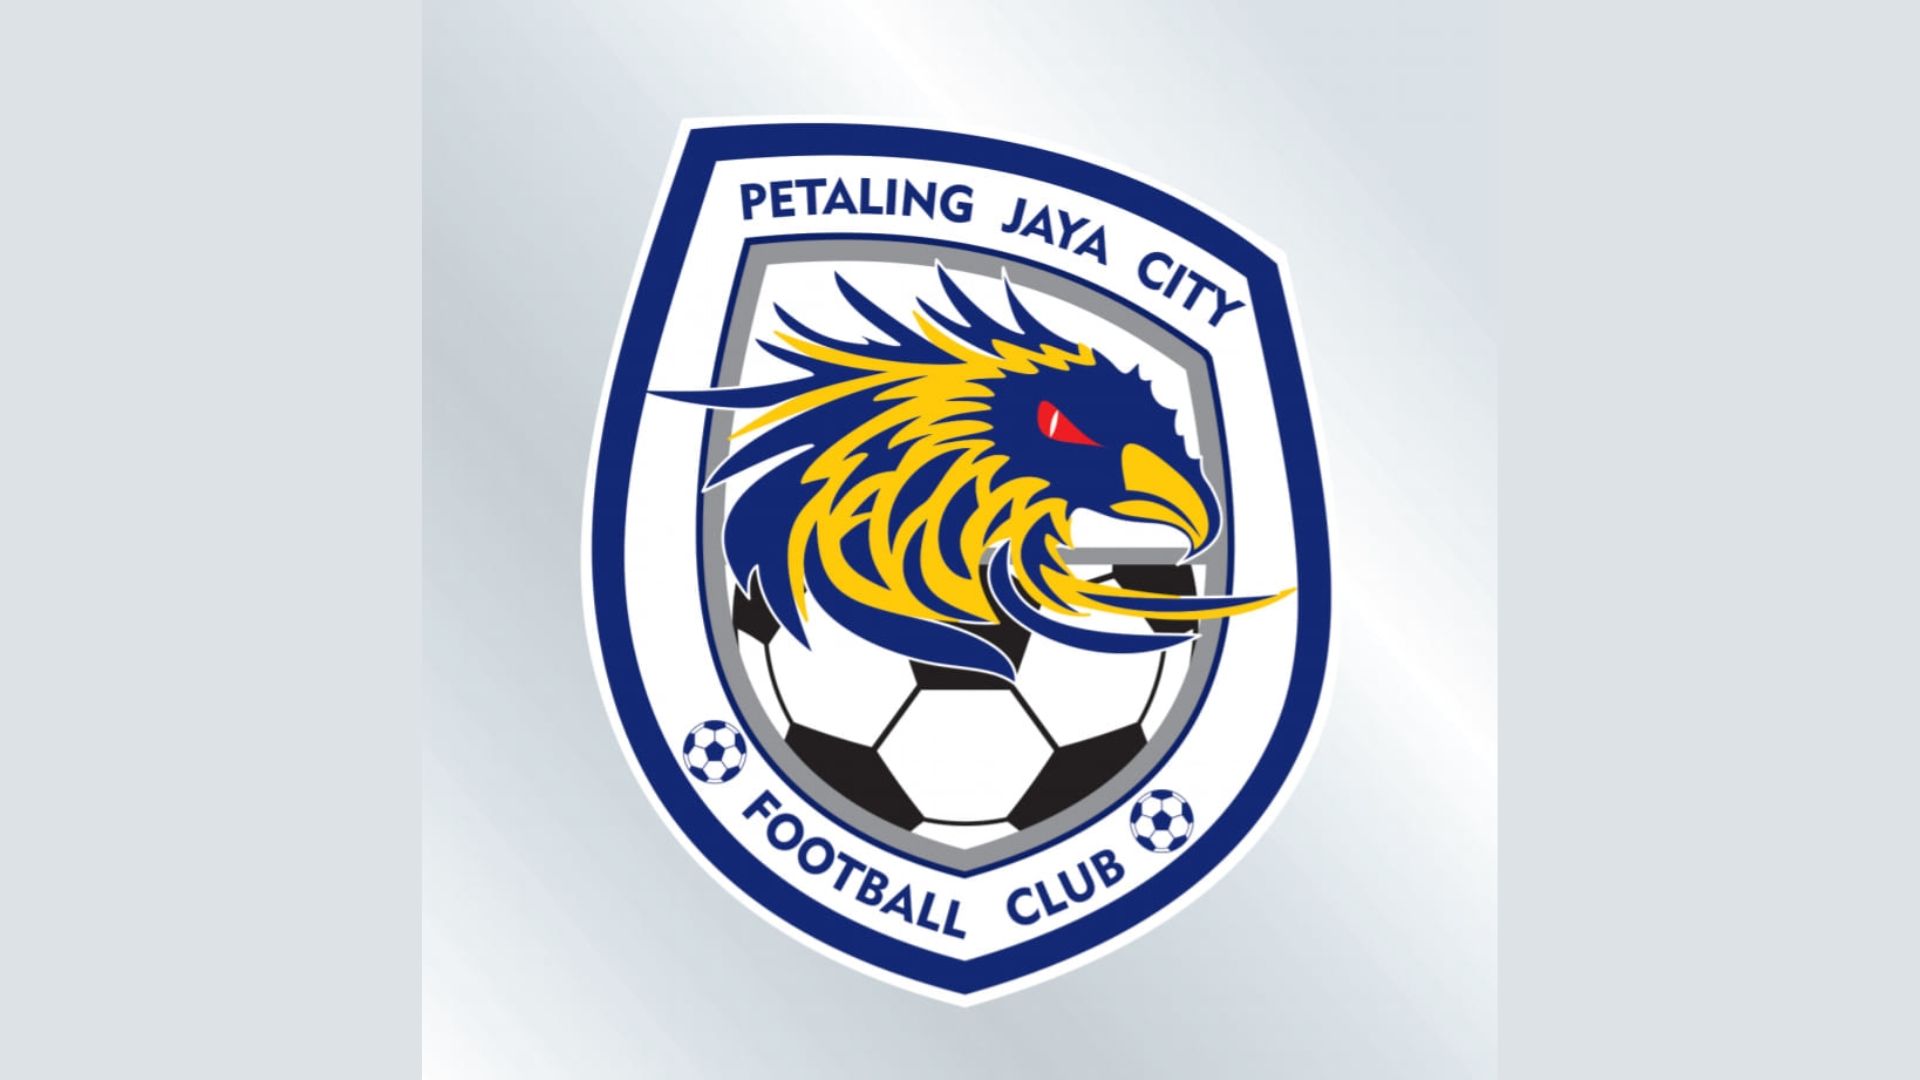 Will PJ City FC make a comeback in local football scene?